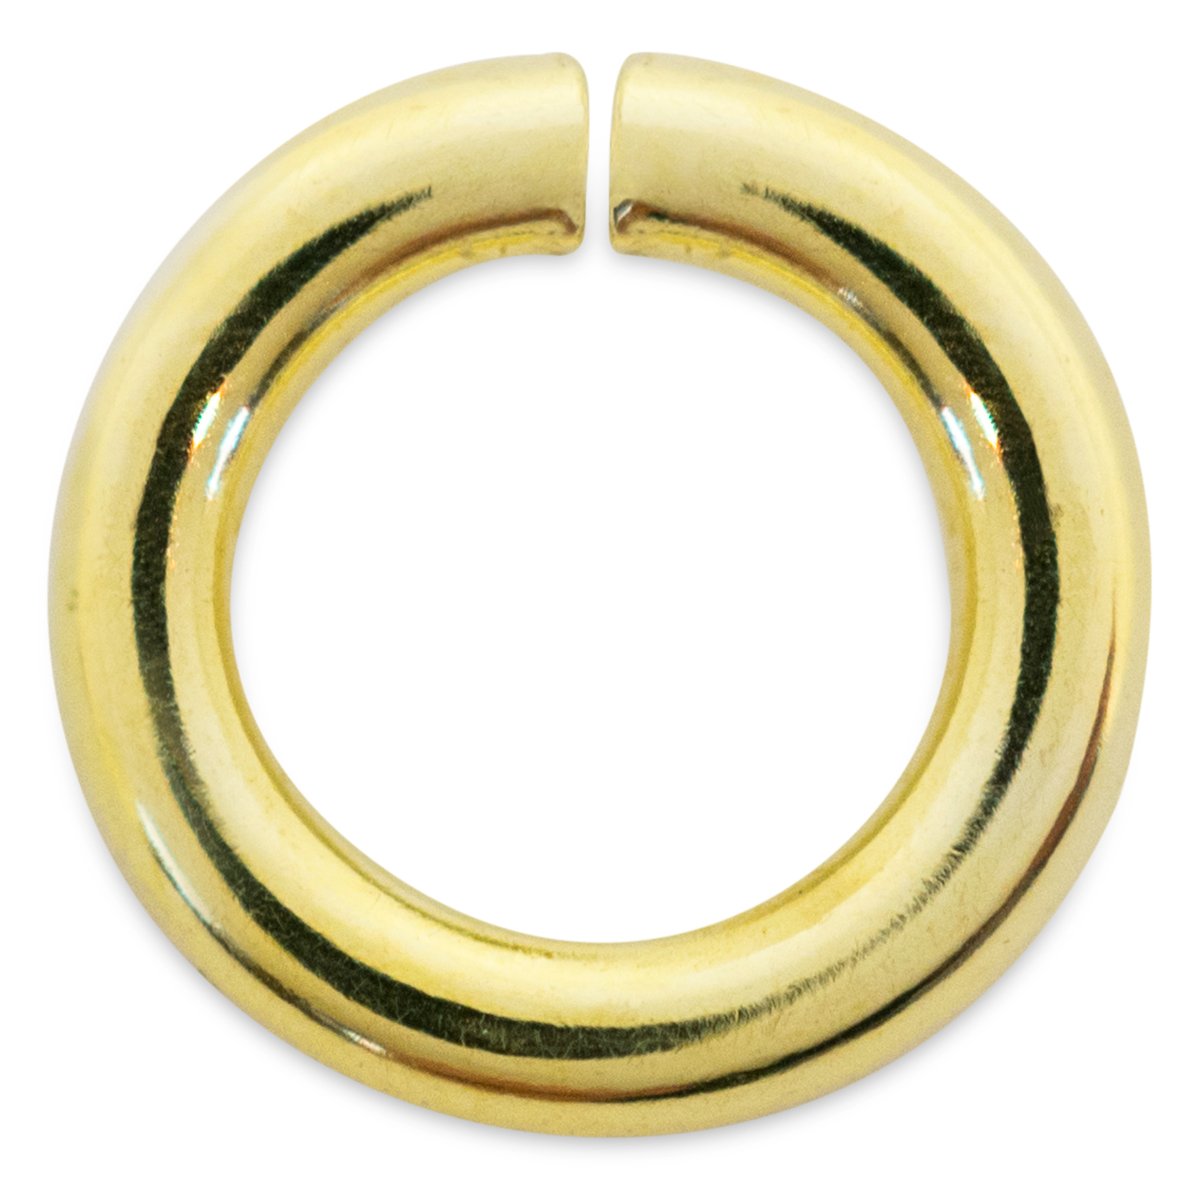 Binderinge, rund, 585/- Gelbgold, Ø 3,5 mm, Stärke 0,5 mm